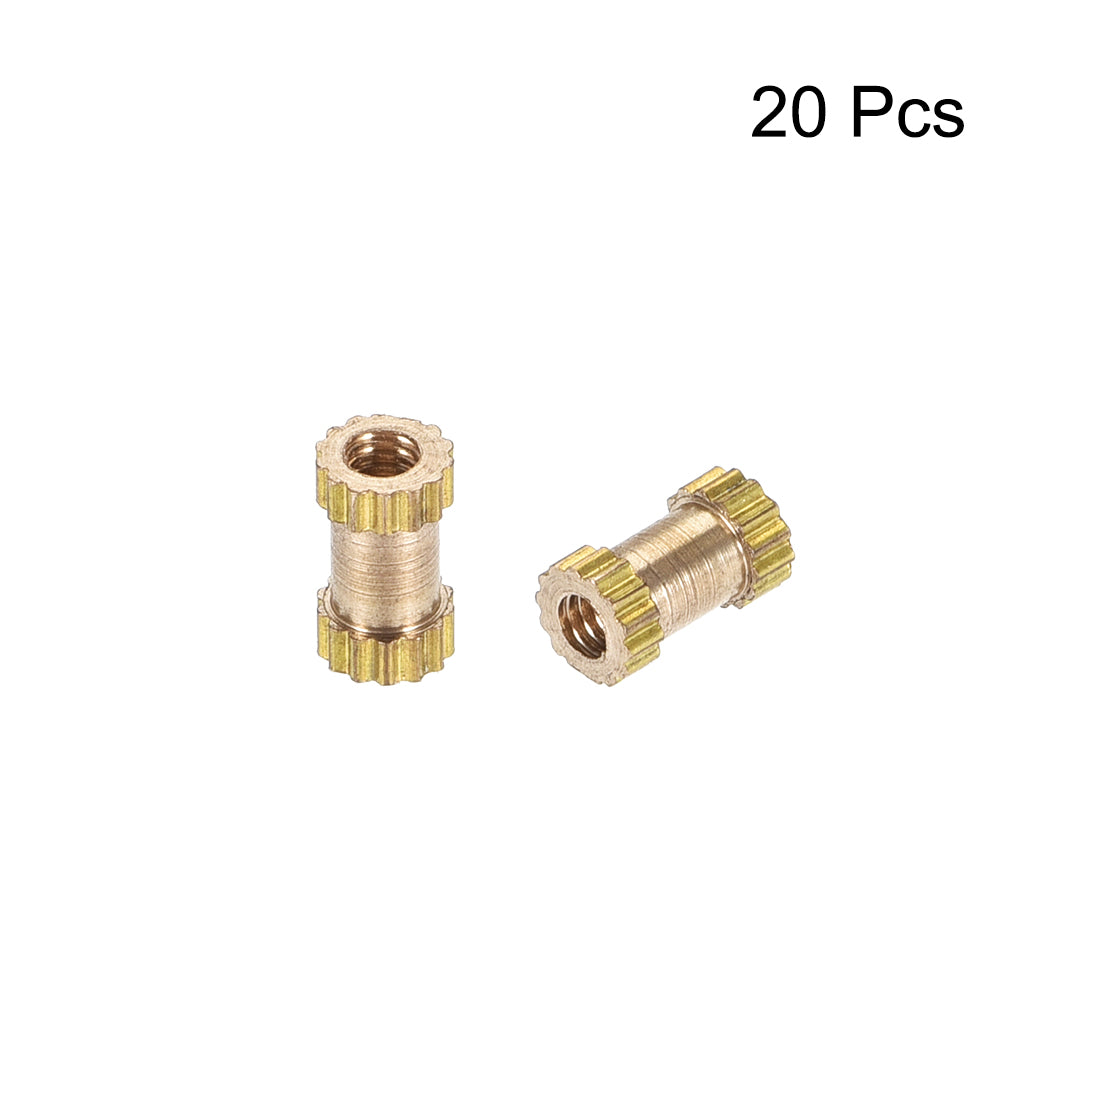 uxcell Uxcell Knurled Insert Nuts, M2 x 6mm(L) x 3.5mm(OD) Female Thread Brass Embedment Assortment Kit, 20 Pcs